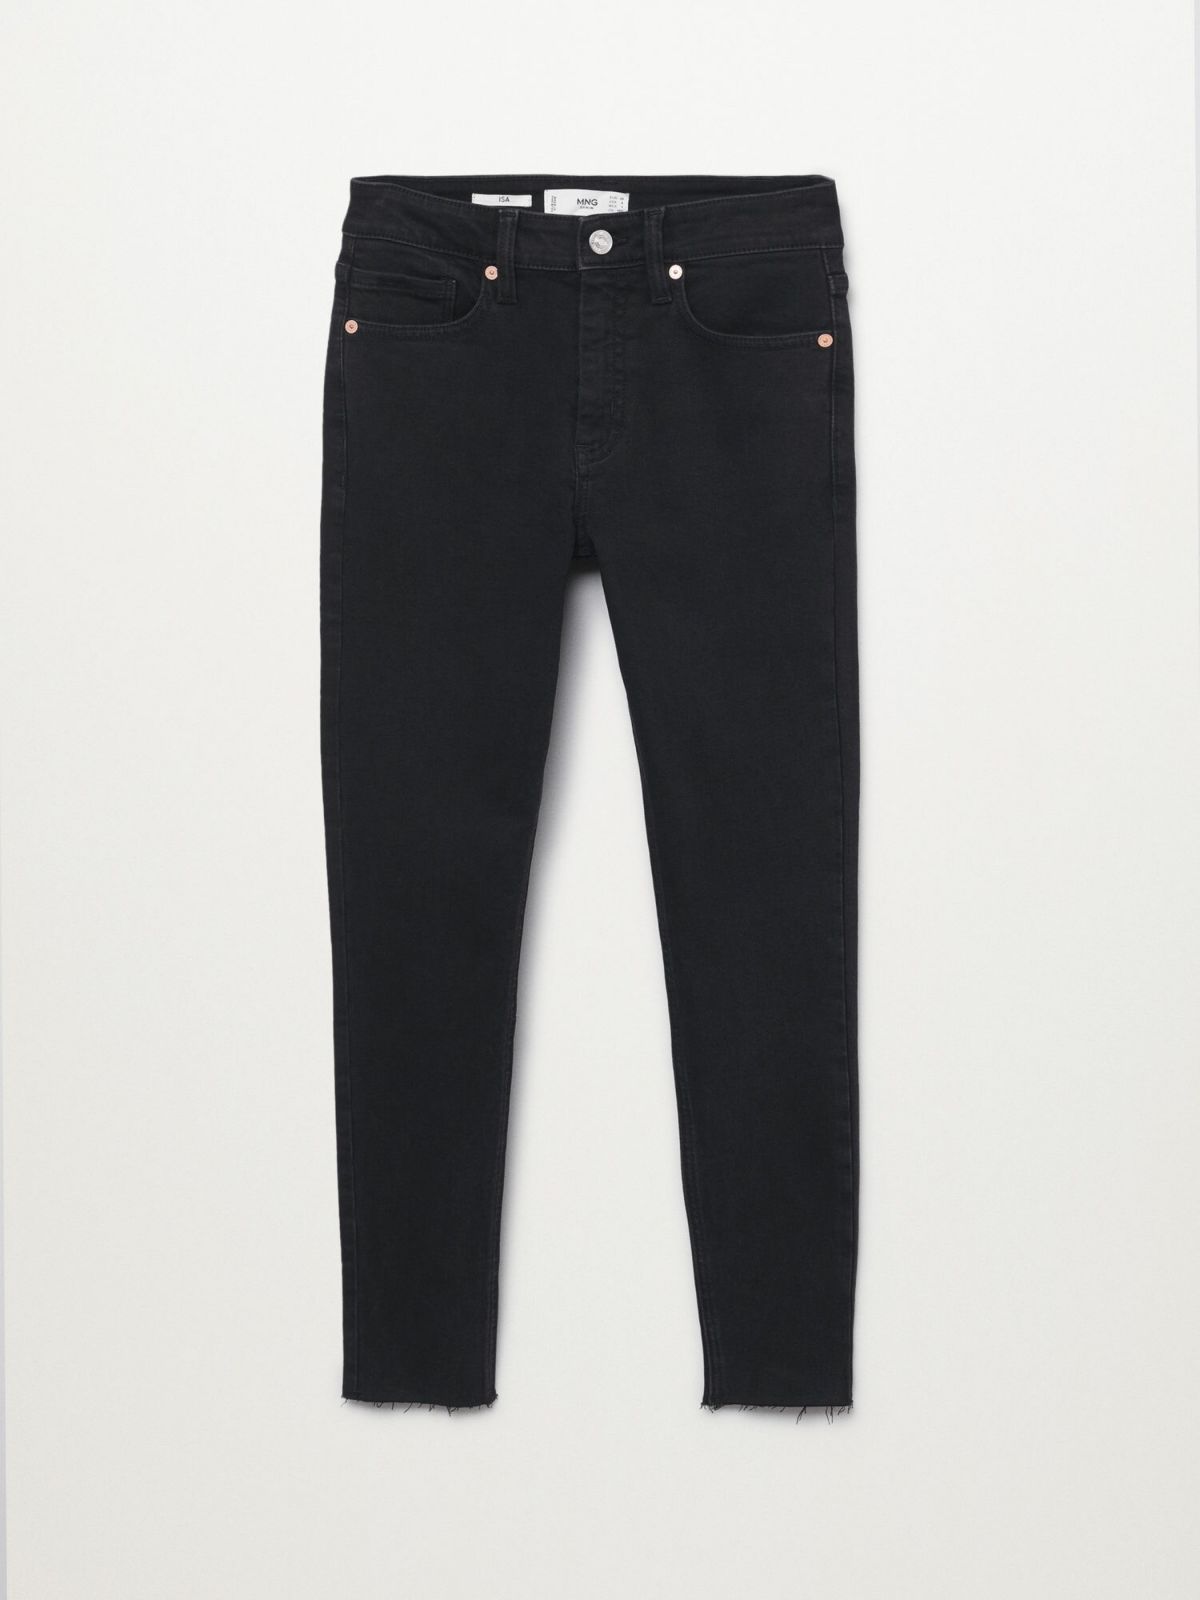  ג'ינס ארוך בגזרת Crop Skinny של MANGO